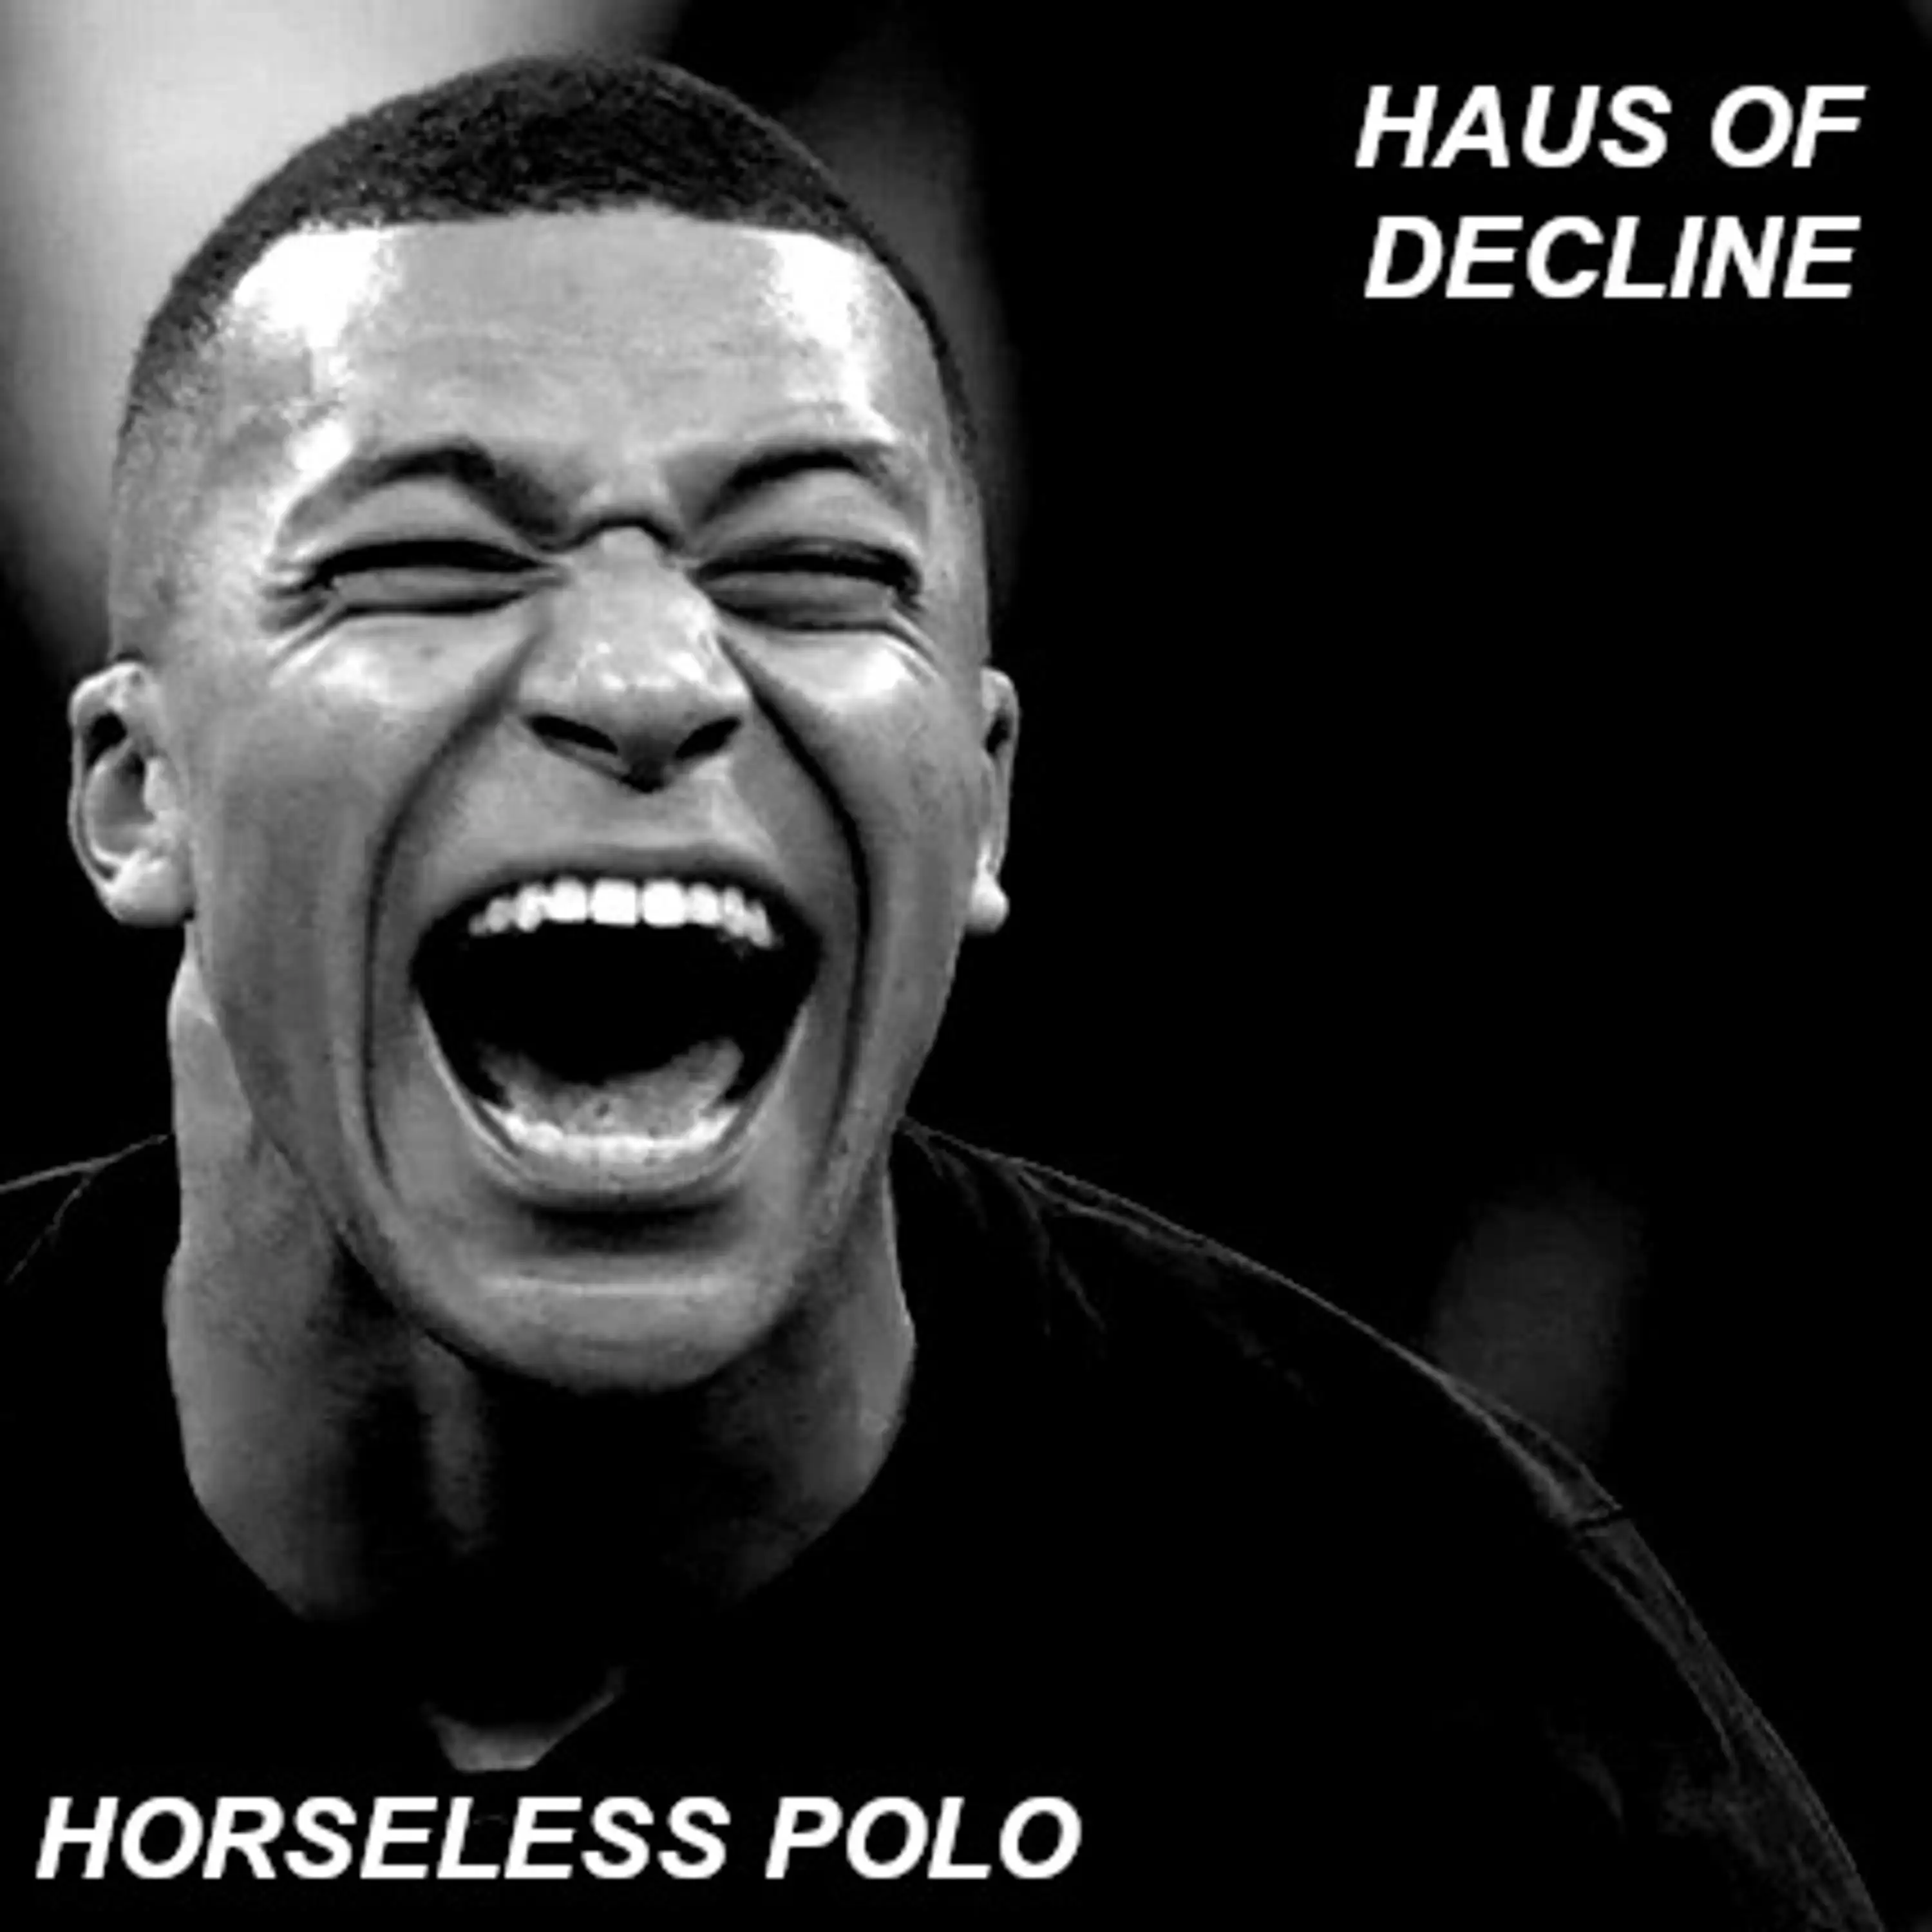 Horseless Polo